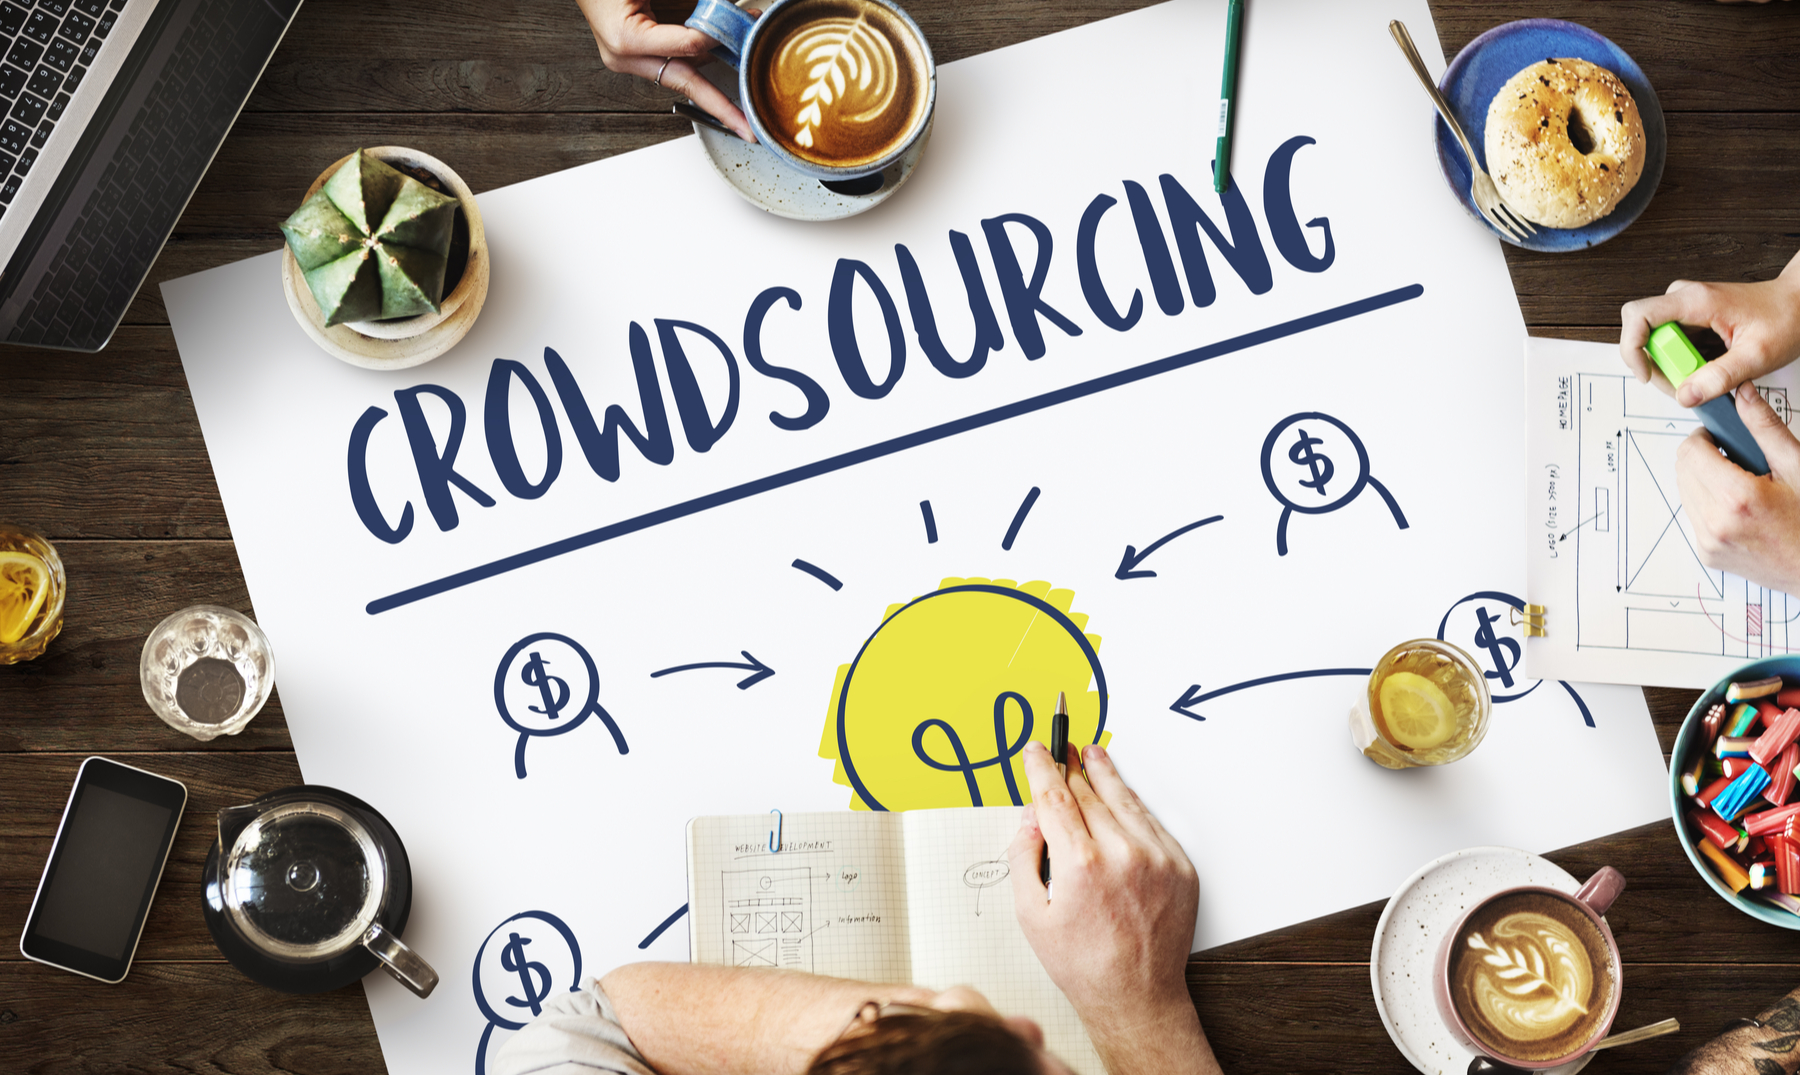 El crowdsourcing involucra al empleado